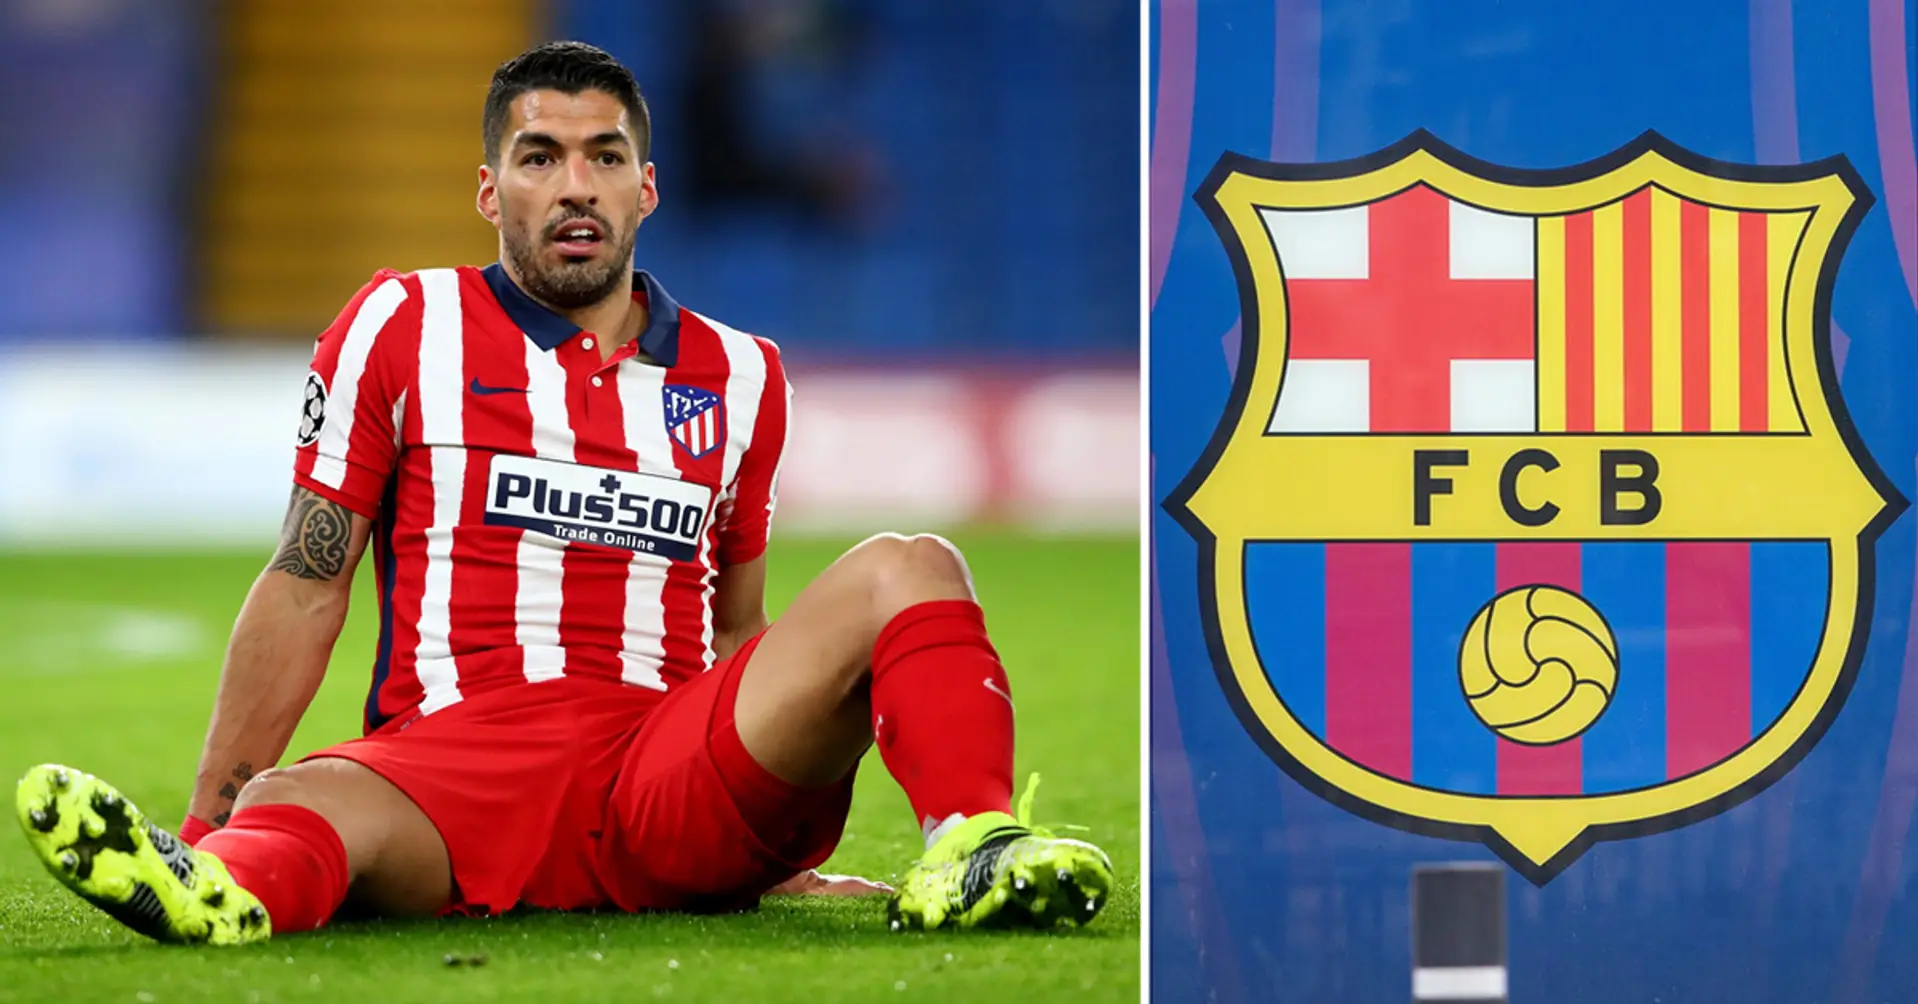 Desvelado: Suárez recomendó al Barça un fichaje desconocido que ahora vale 100M€